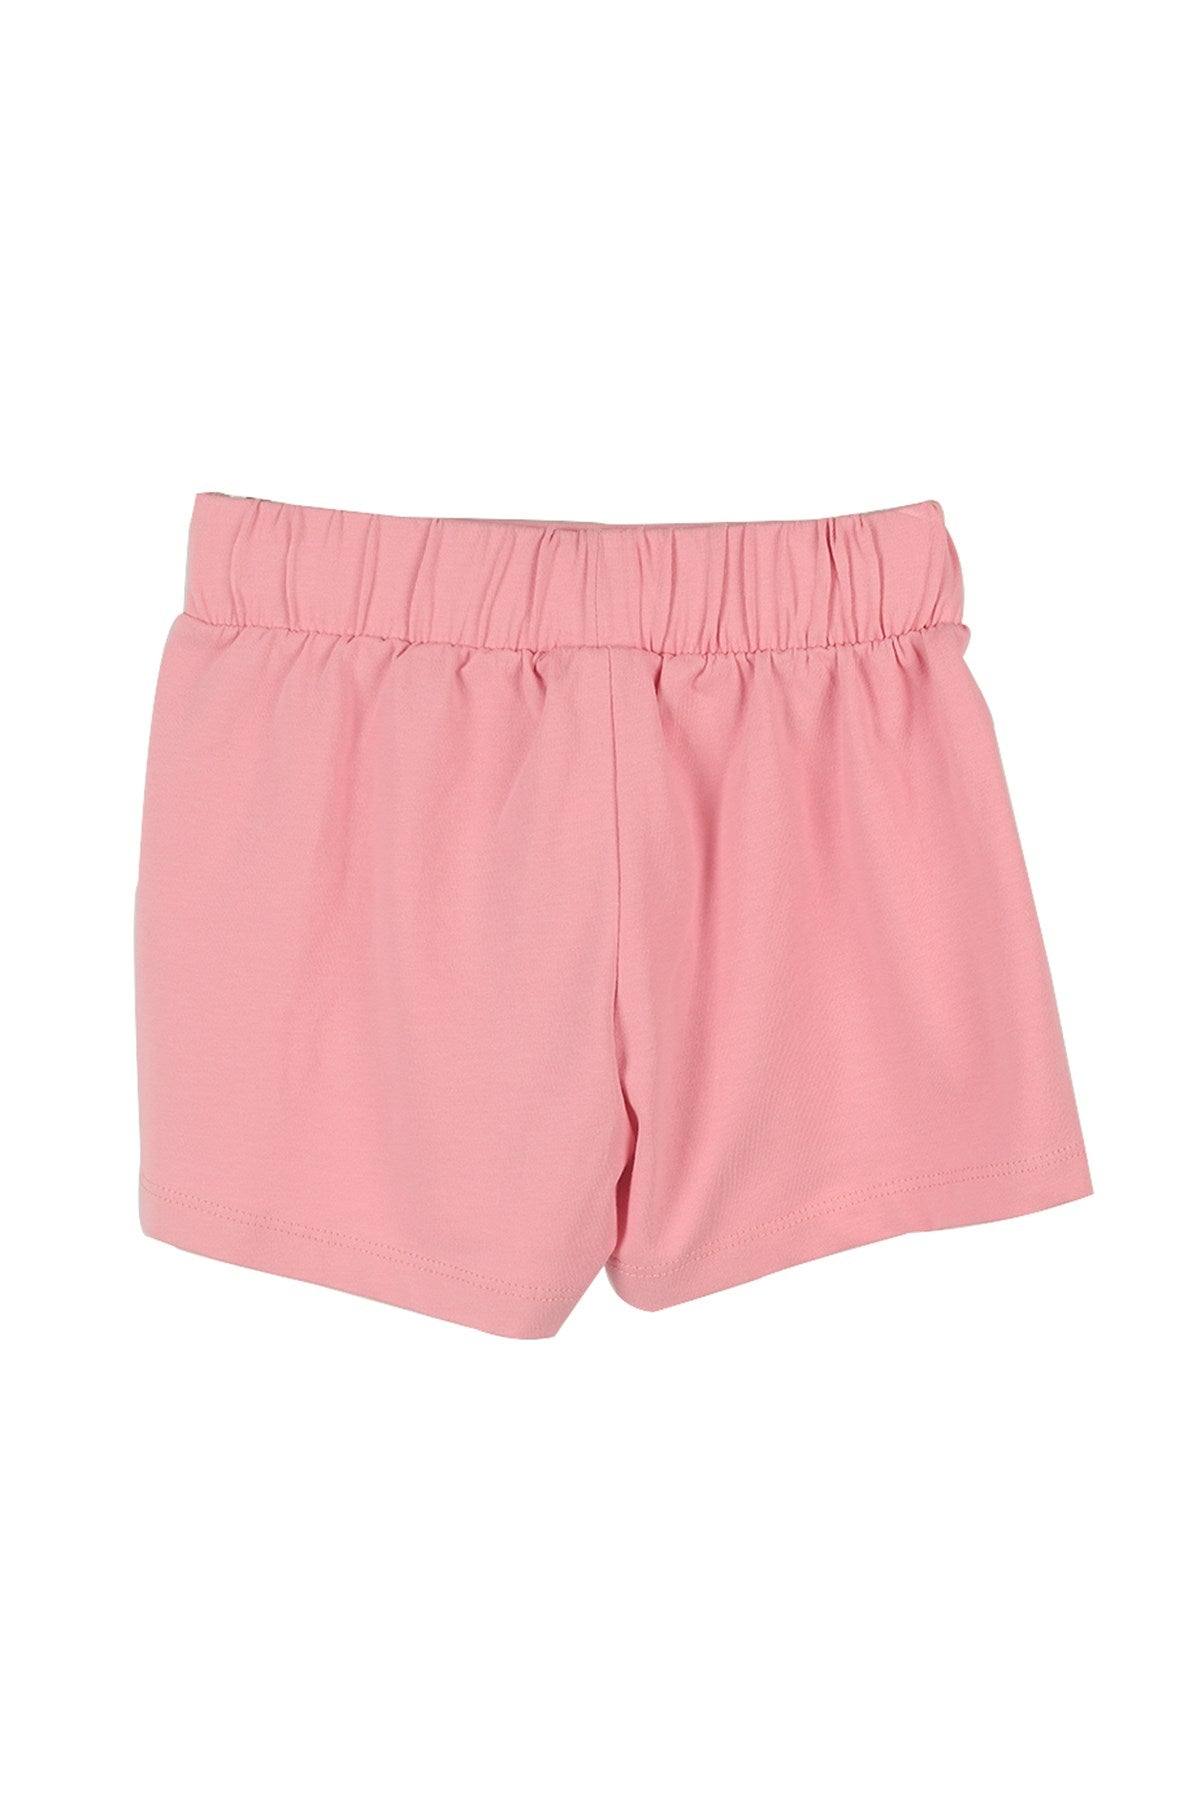 Baby Pink Girls Shorts